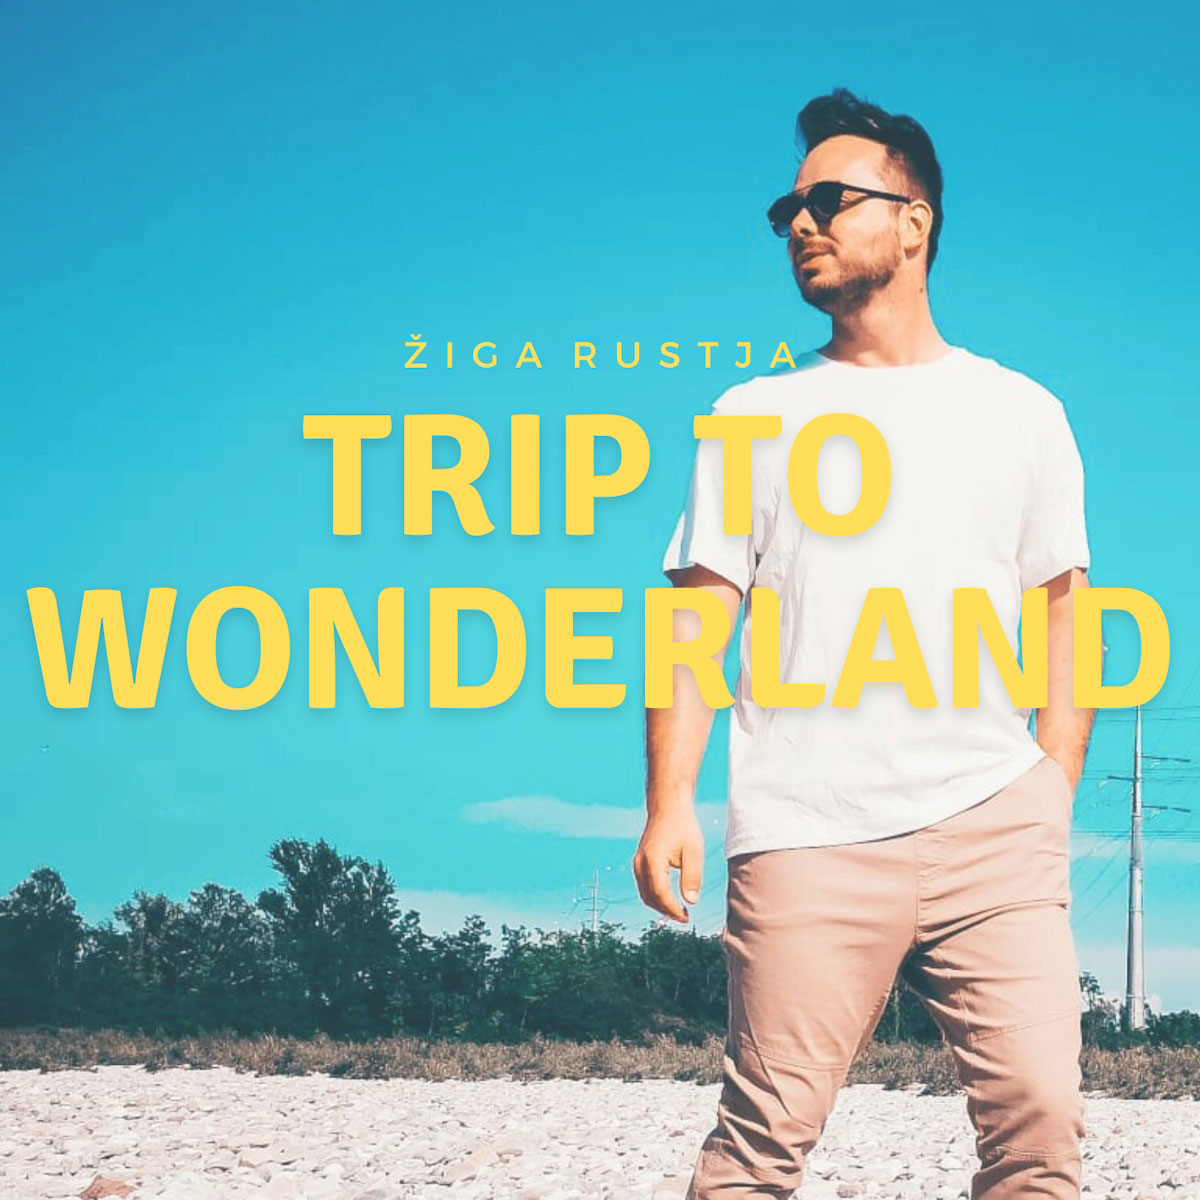 Scopri di più sull'articolo “Trip to Wonderland” il nuovo singolo di Ziga Rustja